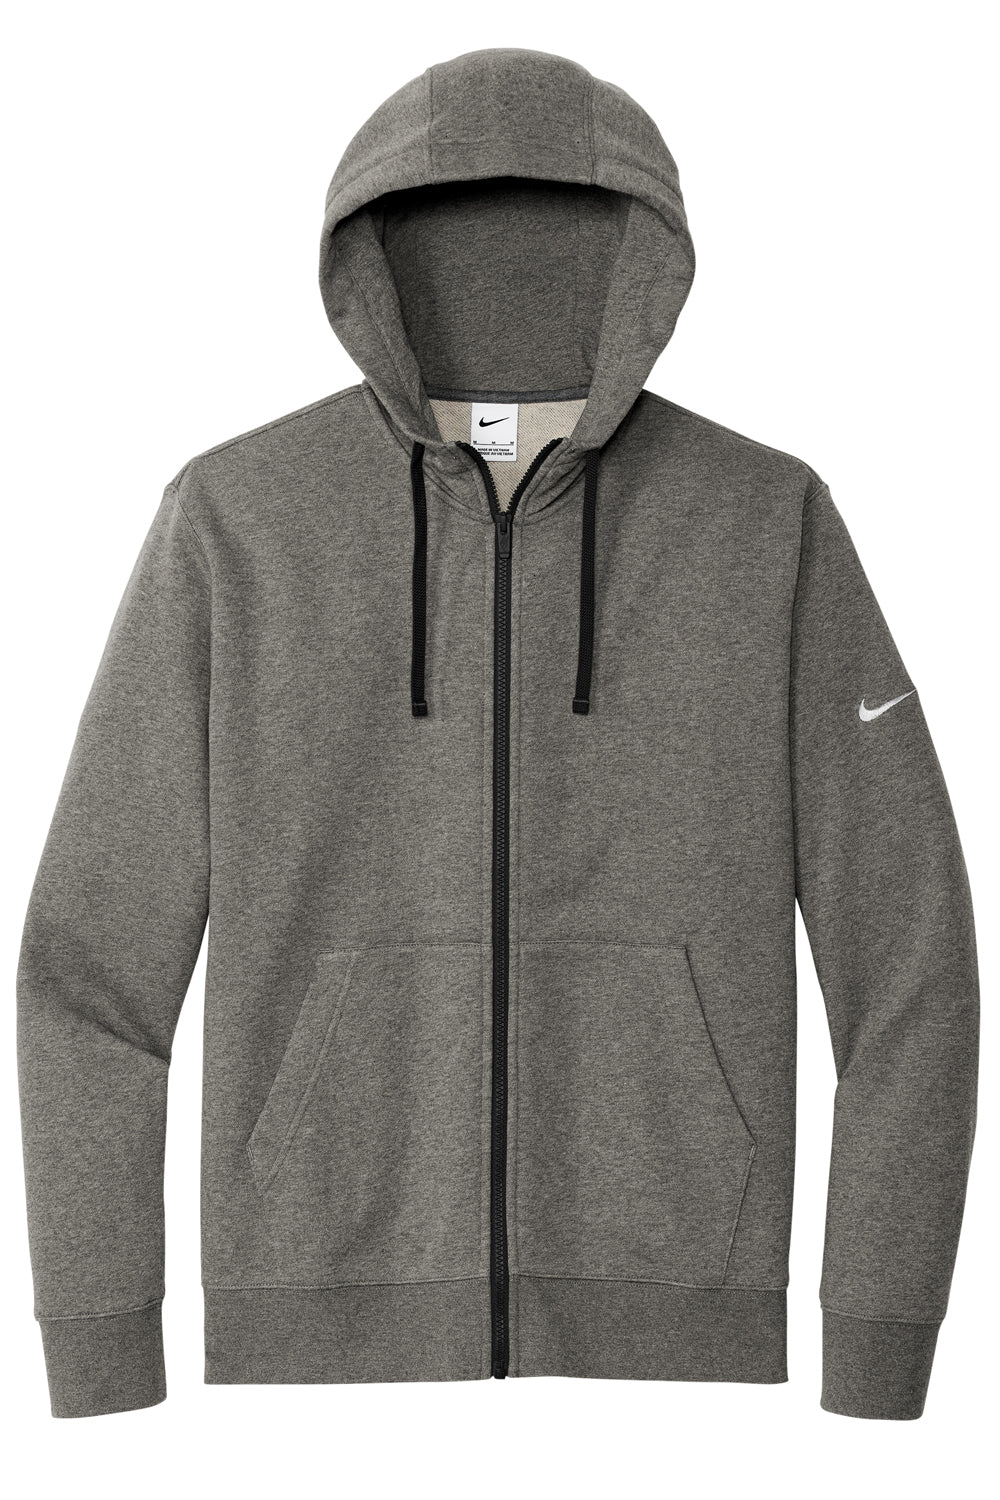 Nike NKDR1513 Mens Club Fleece Full Zip Hooded Sweatshirt Hoodie Heather Charcoal Grey Flat Front